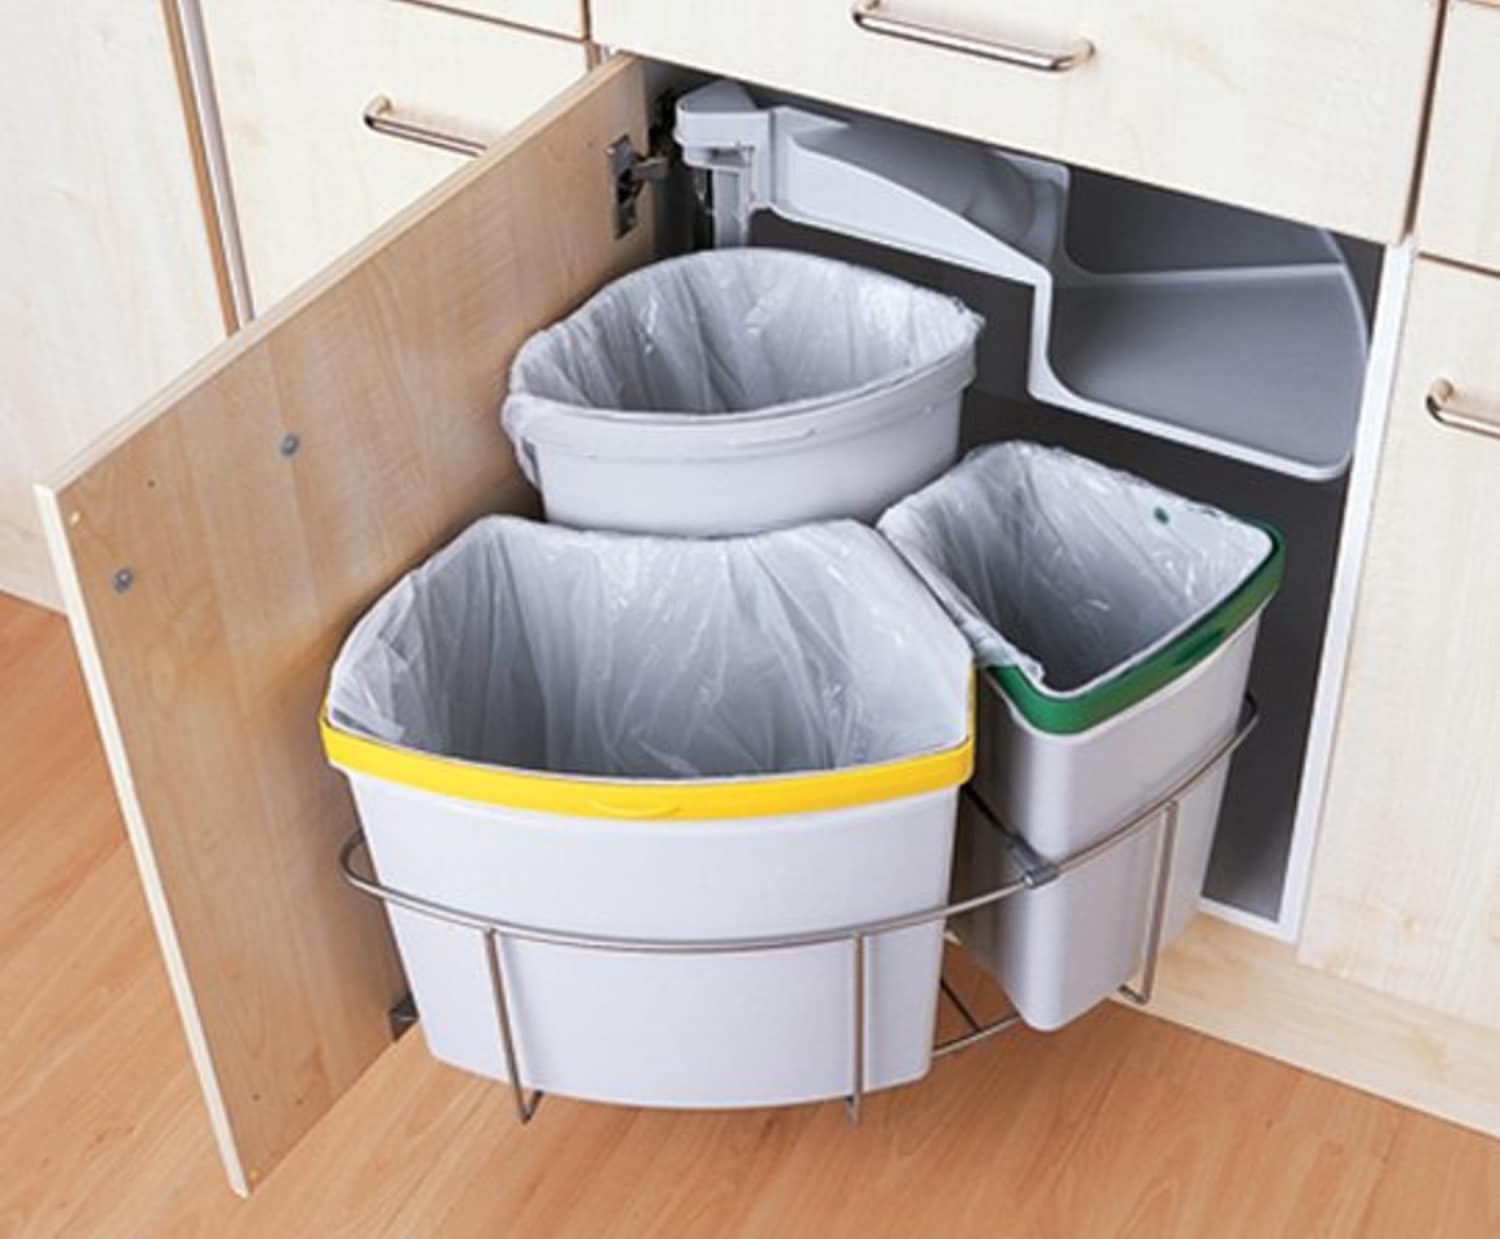 bins for under kitchen sink